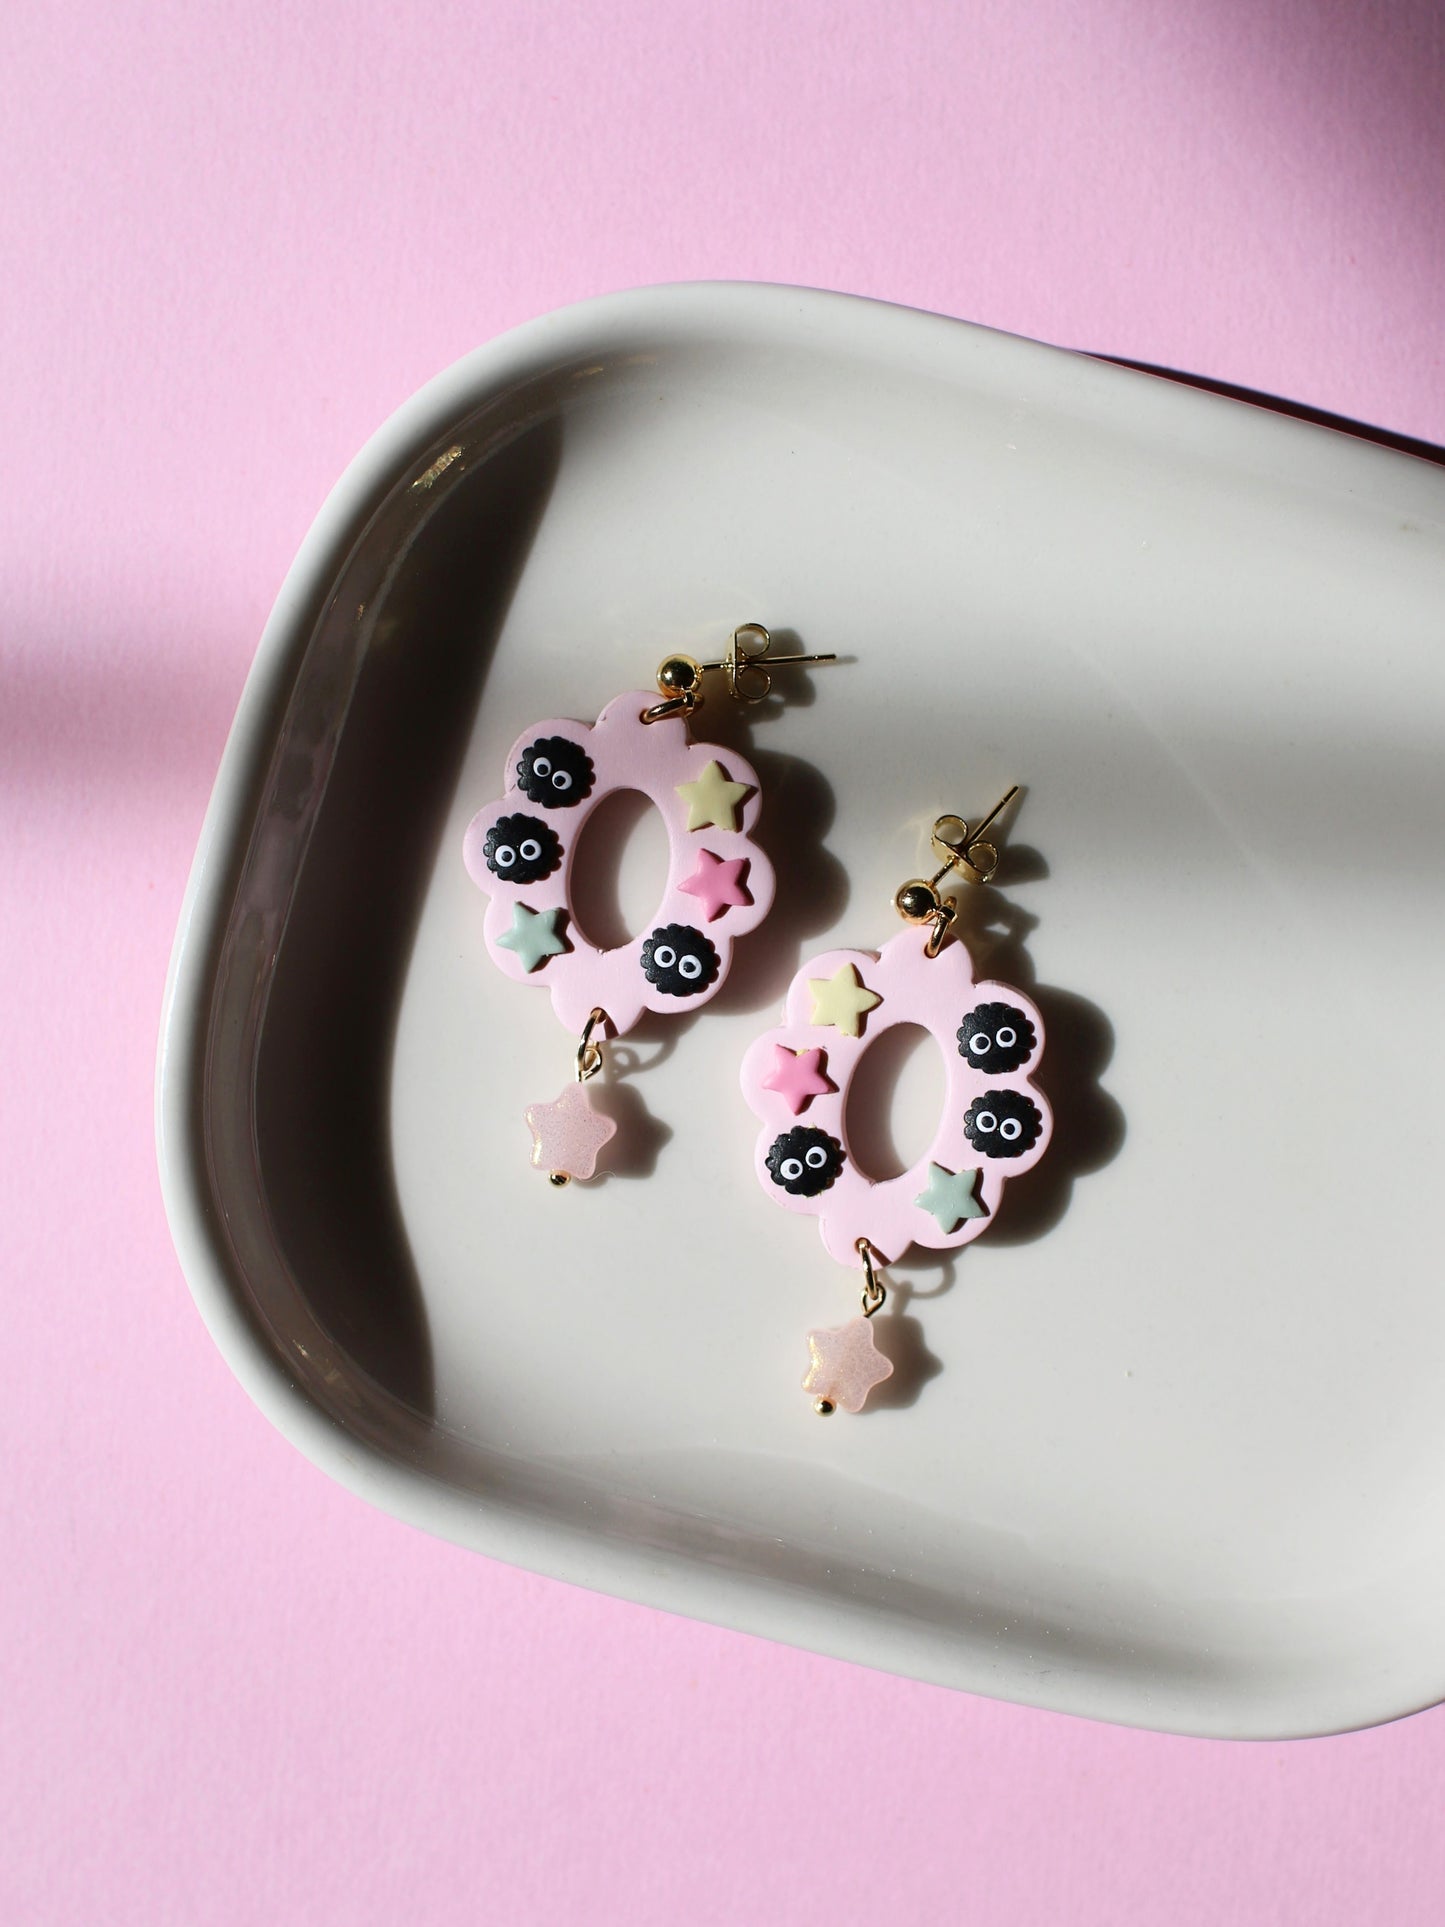 Pastel Sootsprite Rings - Studio Ghibli Inspired Earrings